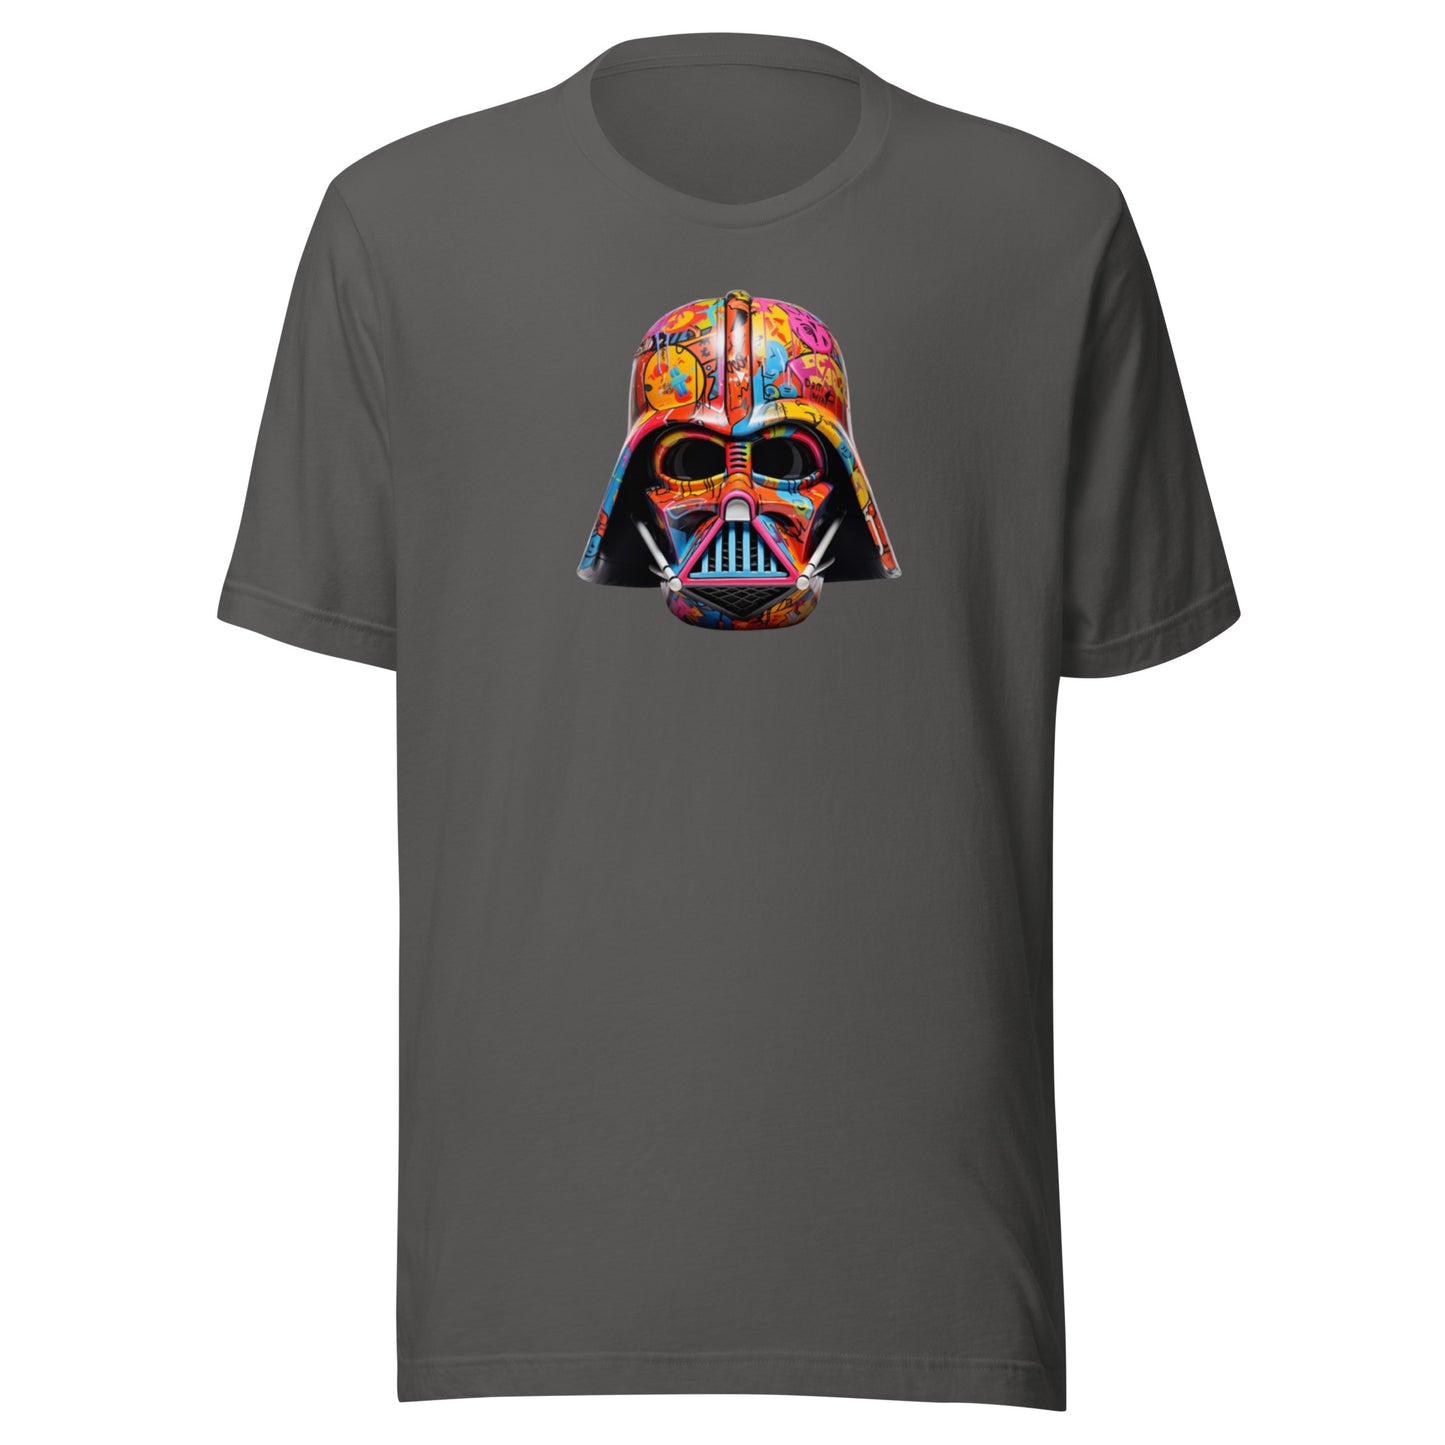 Darth Vader Shirt, Star War Shirt, Vader Helmet Graffiti Shirt, Movie Tee,